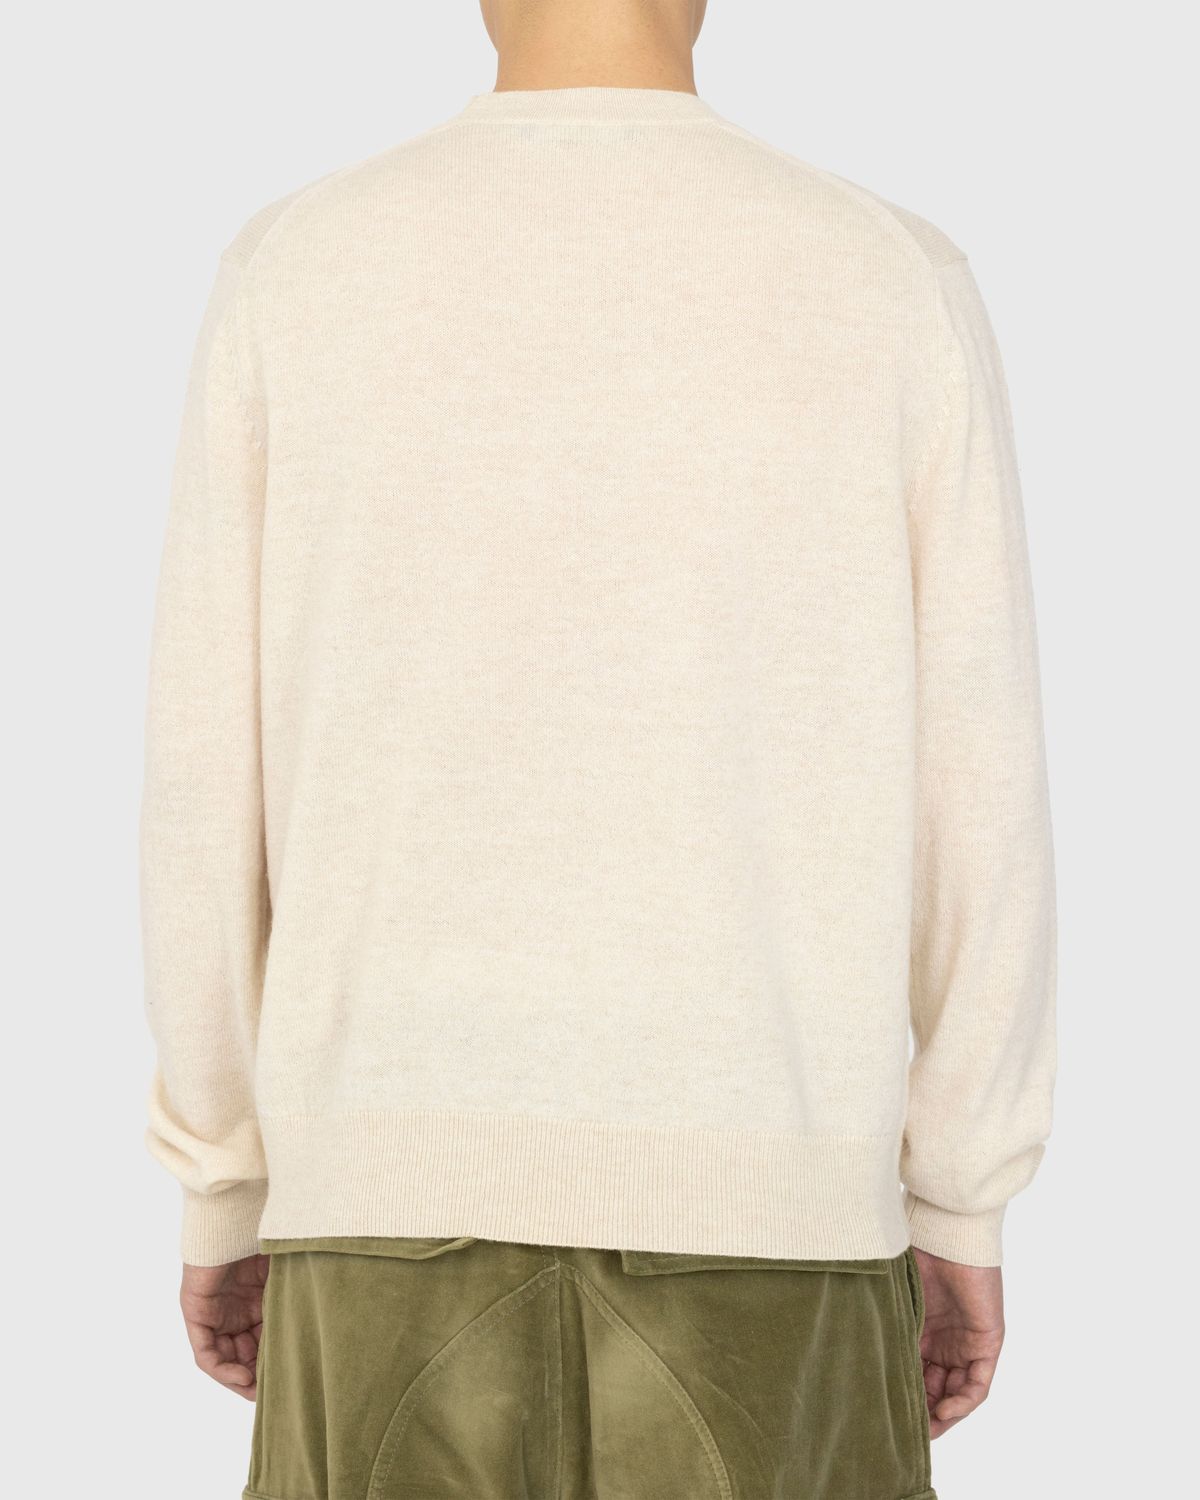 Acne Studios – Wool Crewneck Sweater Oatmeal Melange - Knitwear - Beige - Image 4